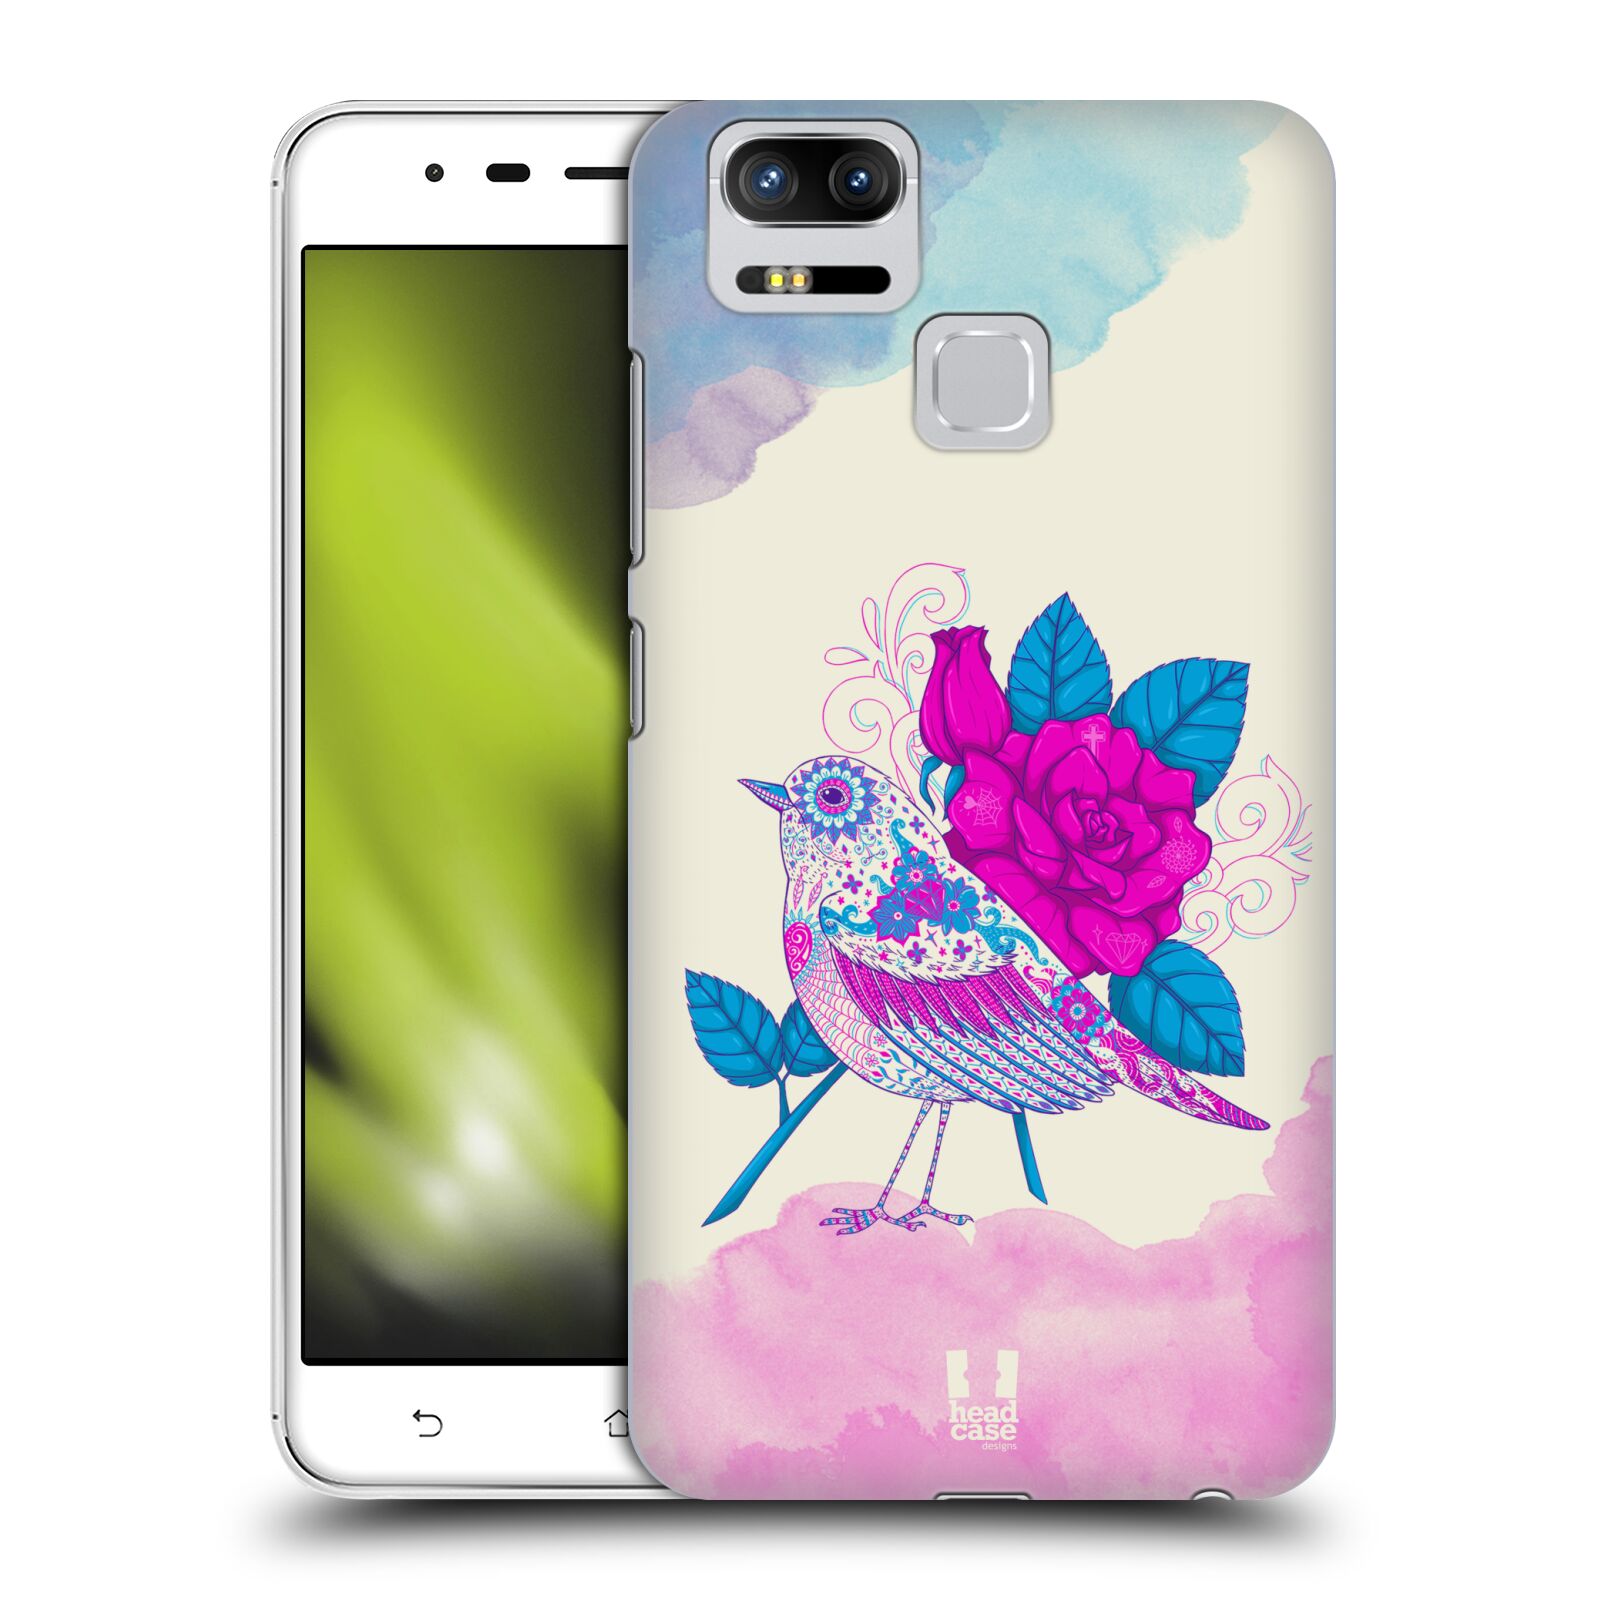 HEAD CASE plastový obal na mobil Asus Zenfone 3 Zoom ZE553KL vzor Květina ptáčci FIALOVÁ